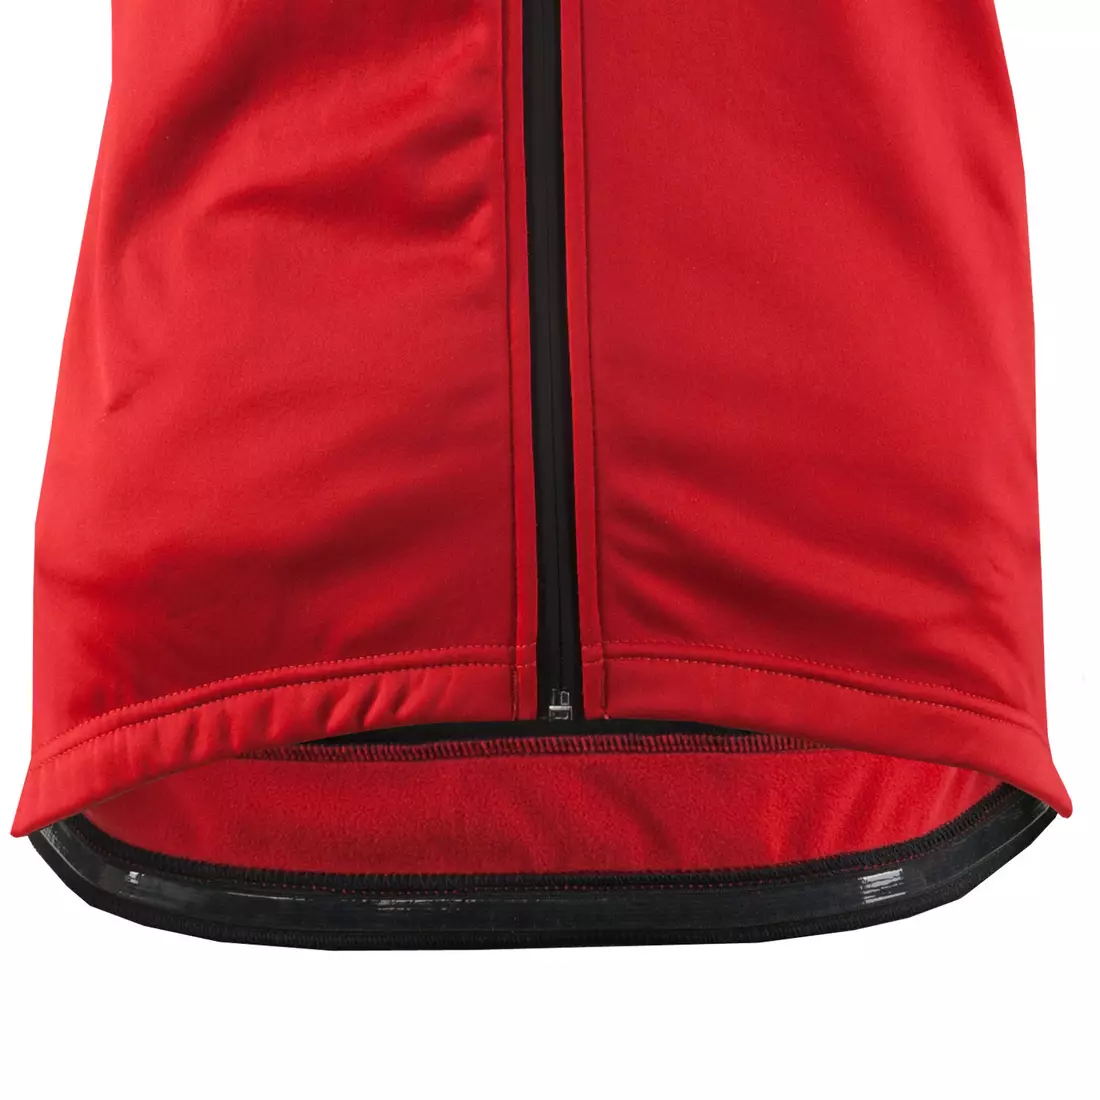 KAYMAQ JWS-003 pánská zimní softshellová cyklistická bunda červeno